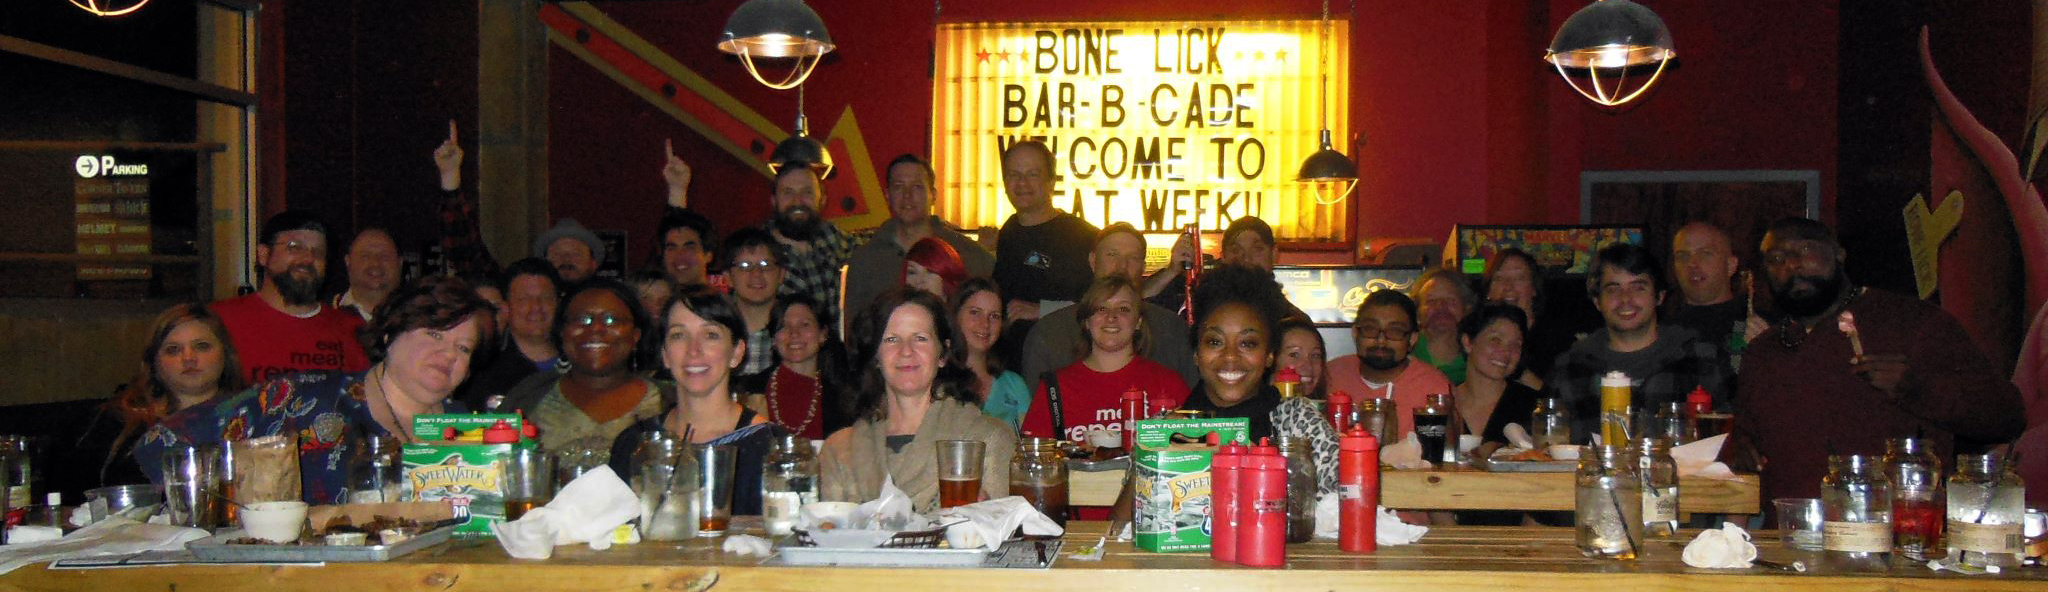 Meat Week Atlanta's Group shot at Bone Lick BBQ